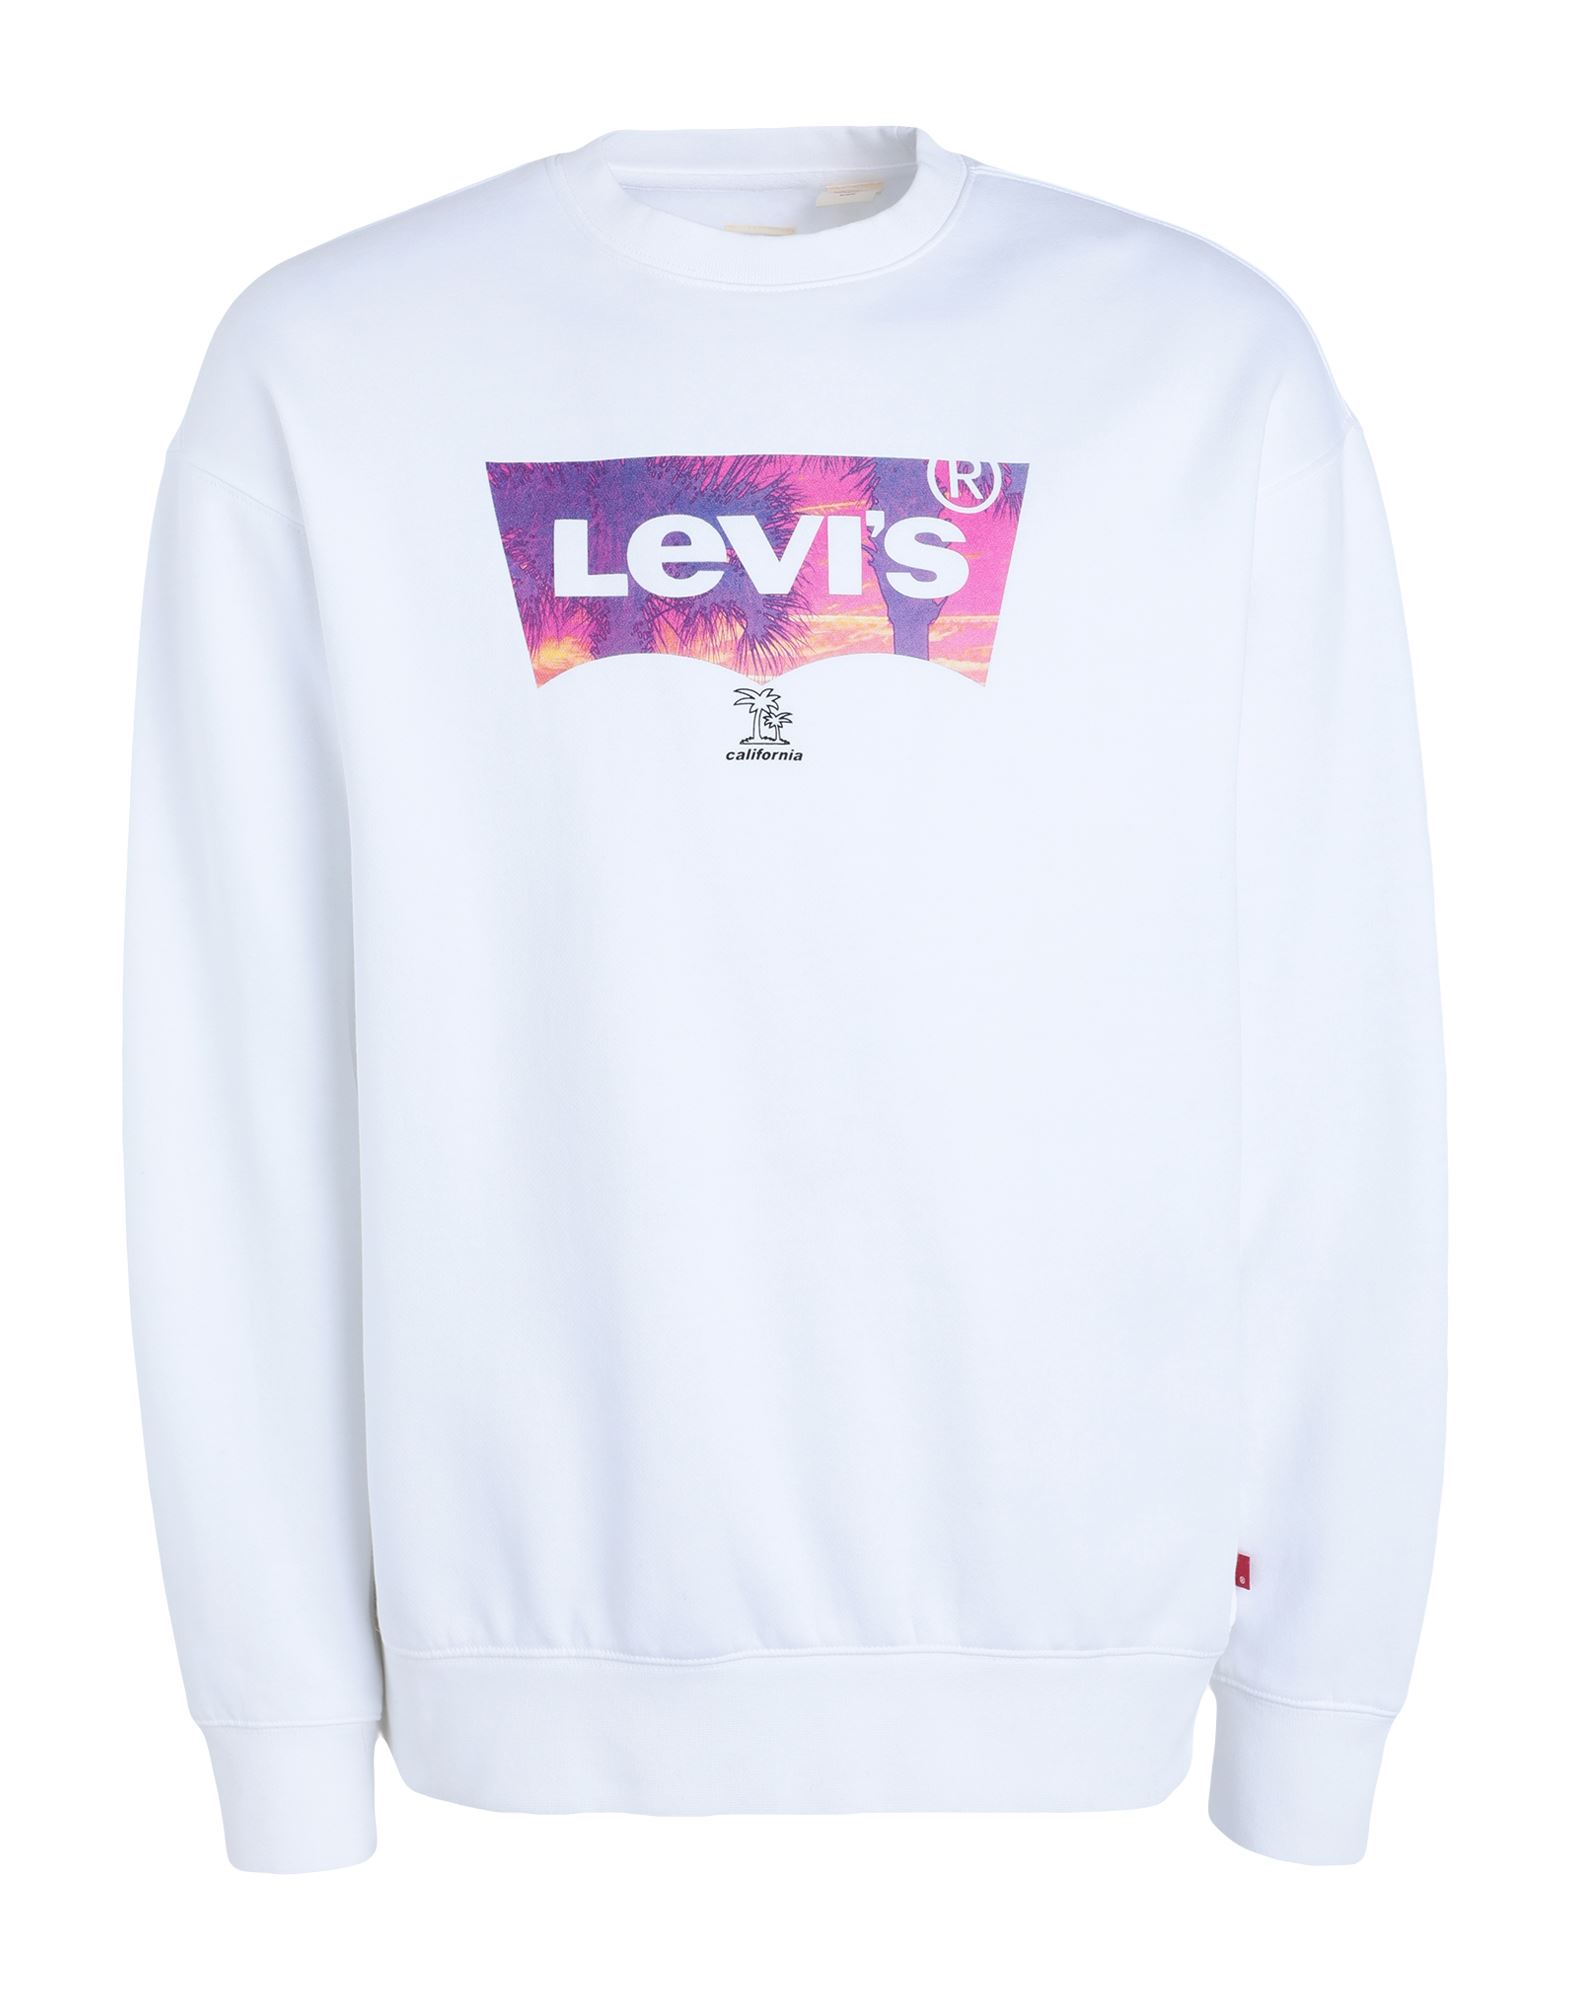 LEVI'S Sweatshirt Herren Weiß von LEVI'S